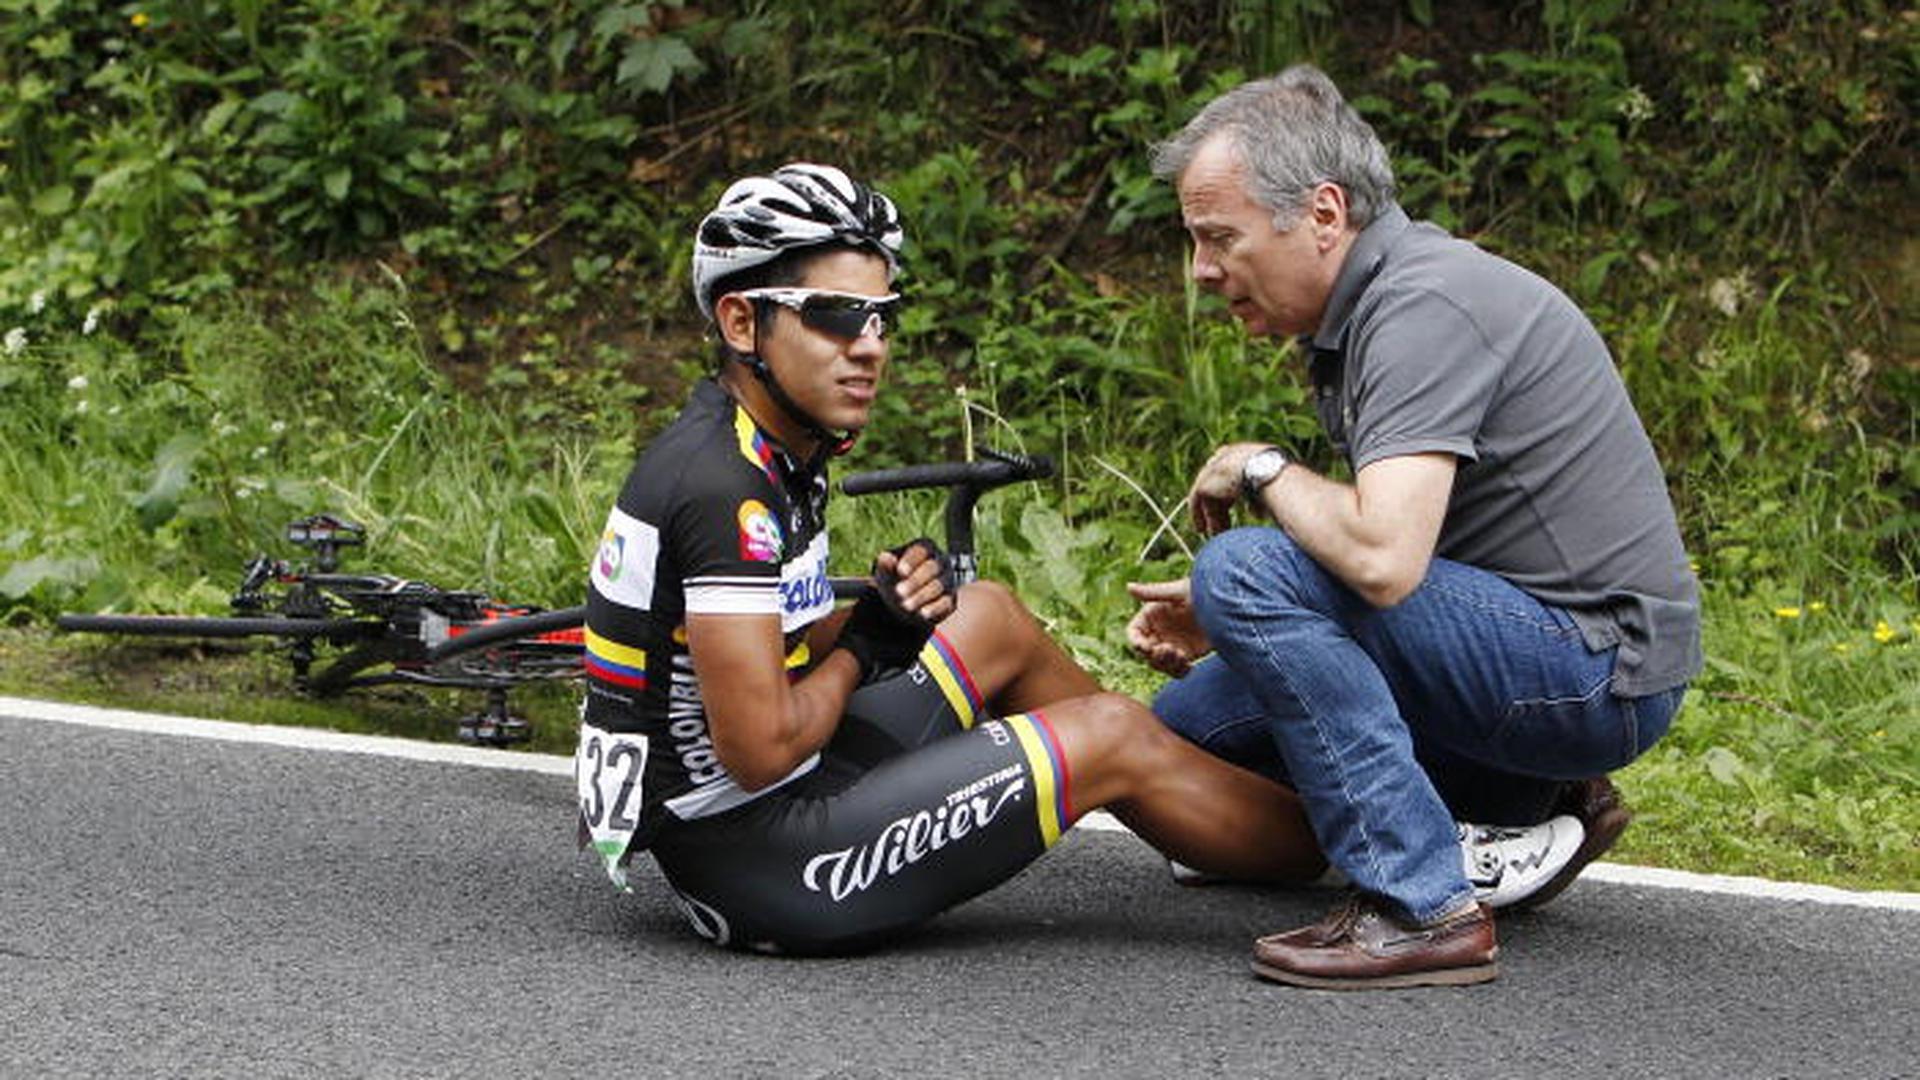 A queda, sem consequências graves, de Edwin Avila da equipa Colombia